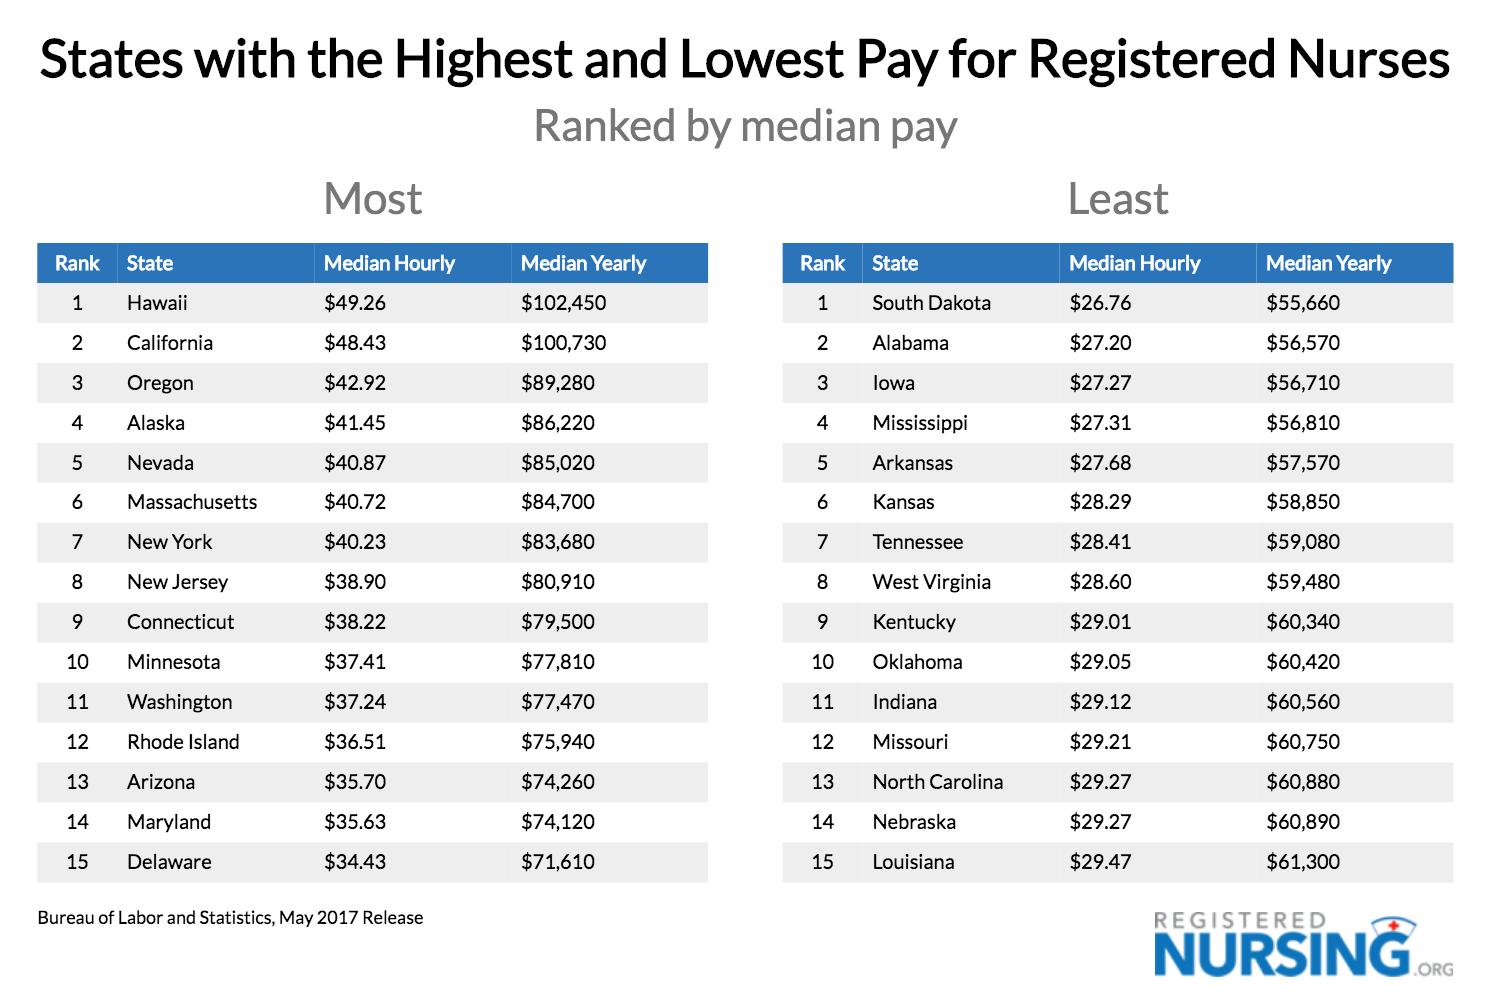 注册护士最高和最低工资的州，中位数工资gydF4y2Ba